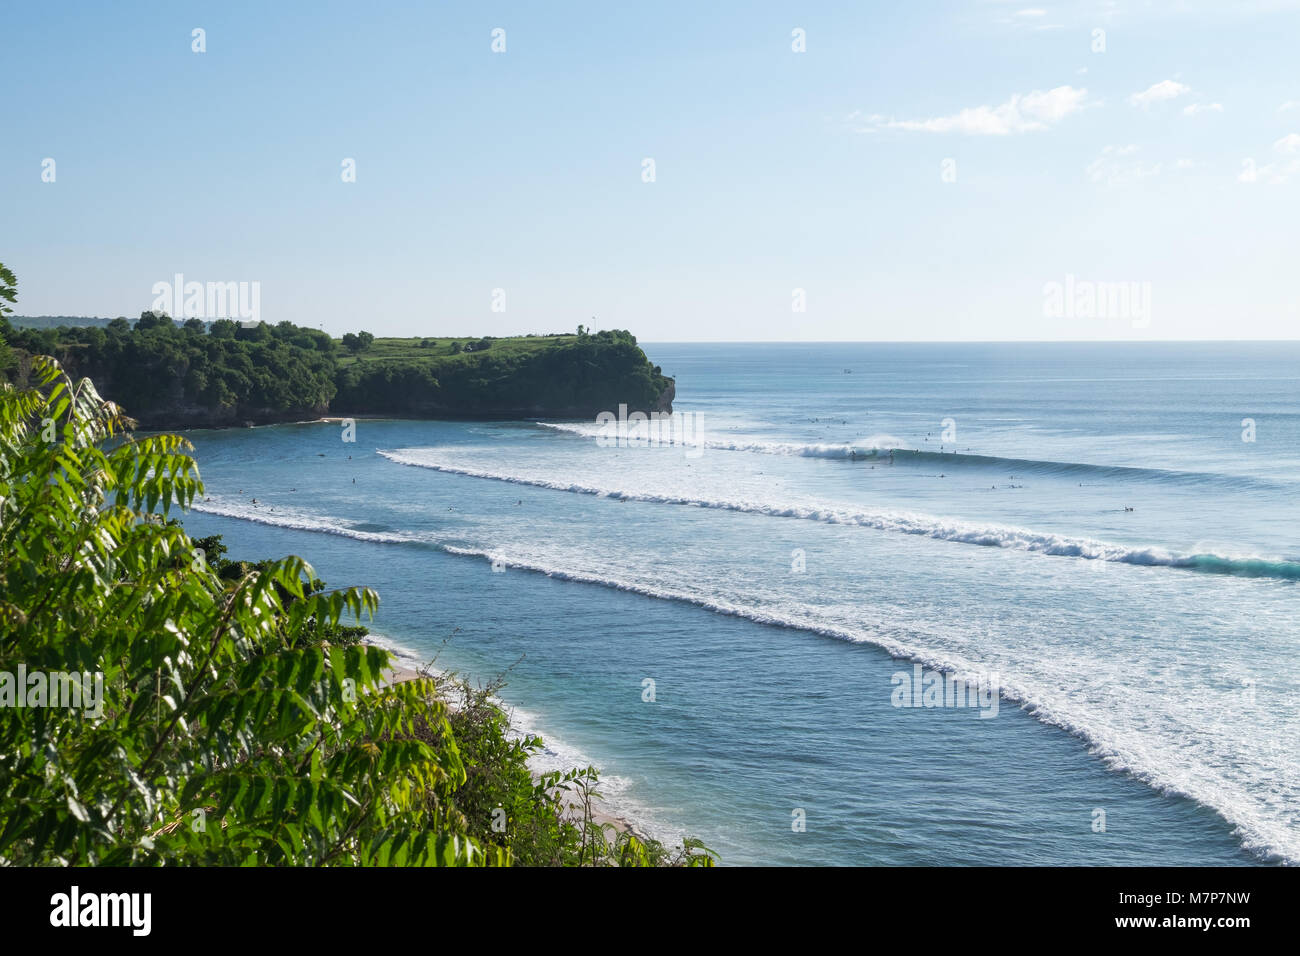 Vue depuis les falaises de la plage de Balangan, Bali Indonésie Banque D'Images